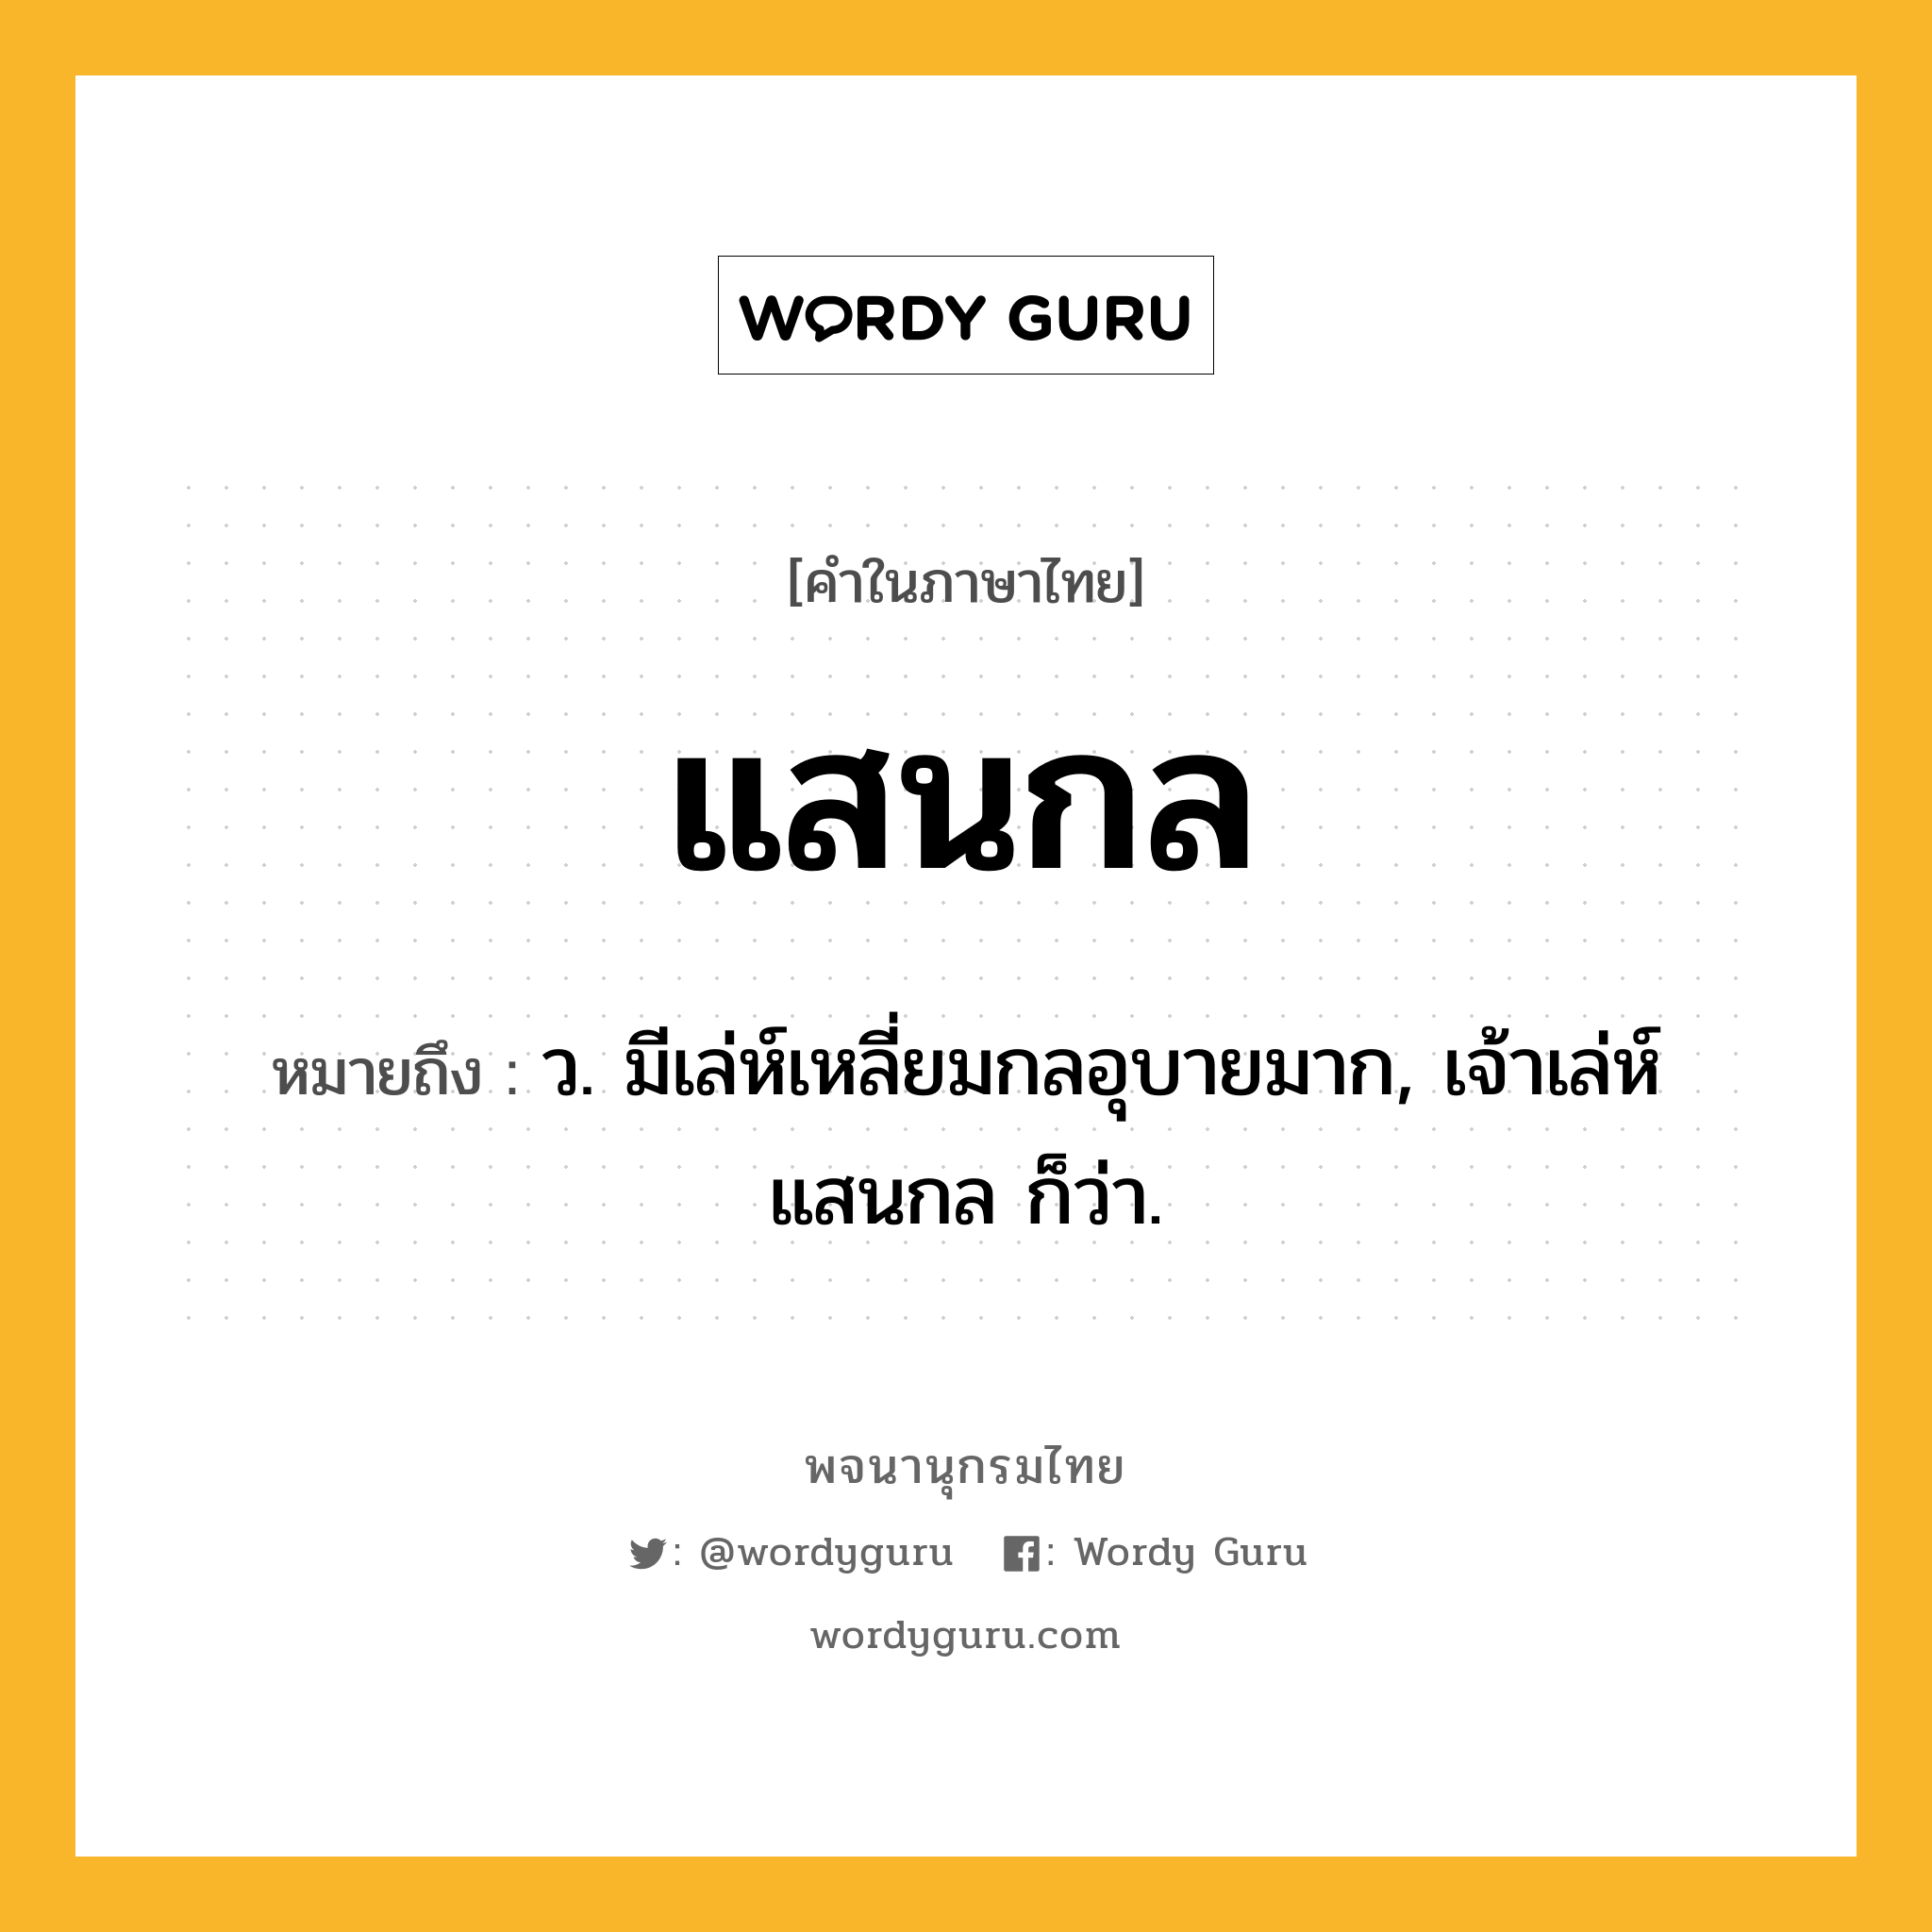 แสนกล ความหมาย หมายถึงอะไร?, คำในภาษาไทย แสนกล หมายถึง ว. มีเล่ห์เหลี่ยมกลอุบายมาก, เจ้าเล่ห์แสนกล ก็ว่า.